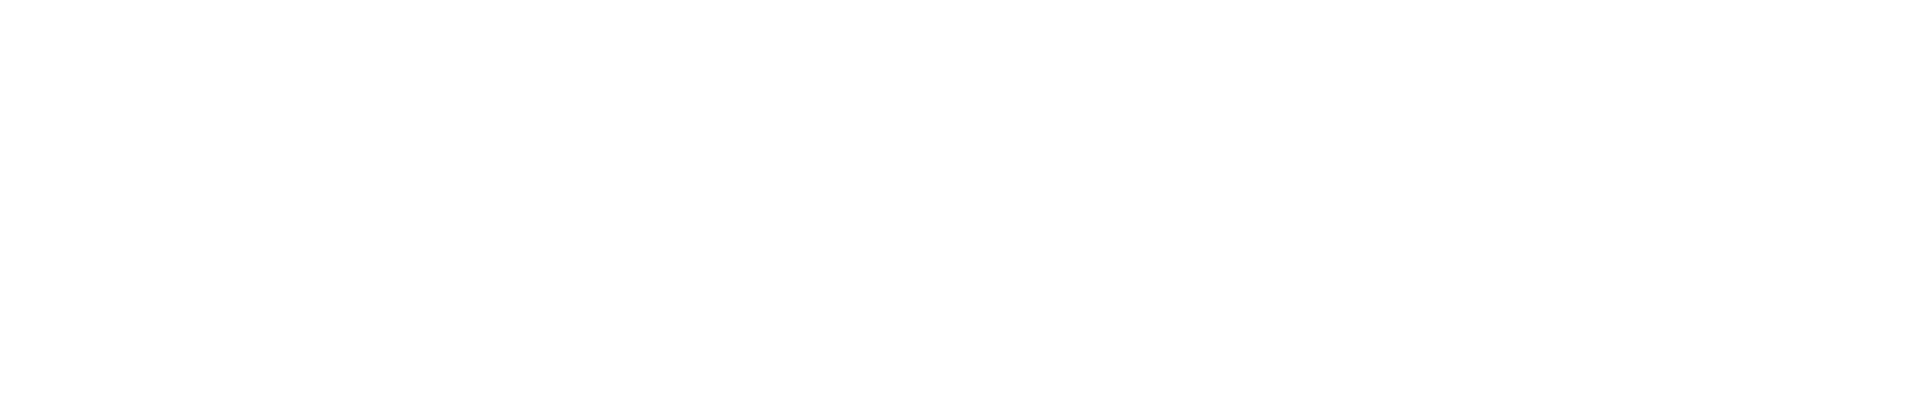 Supersalud